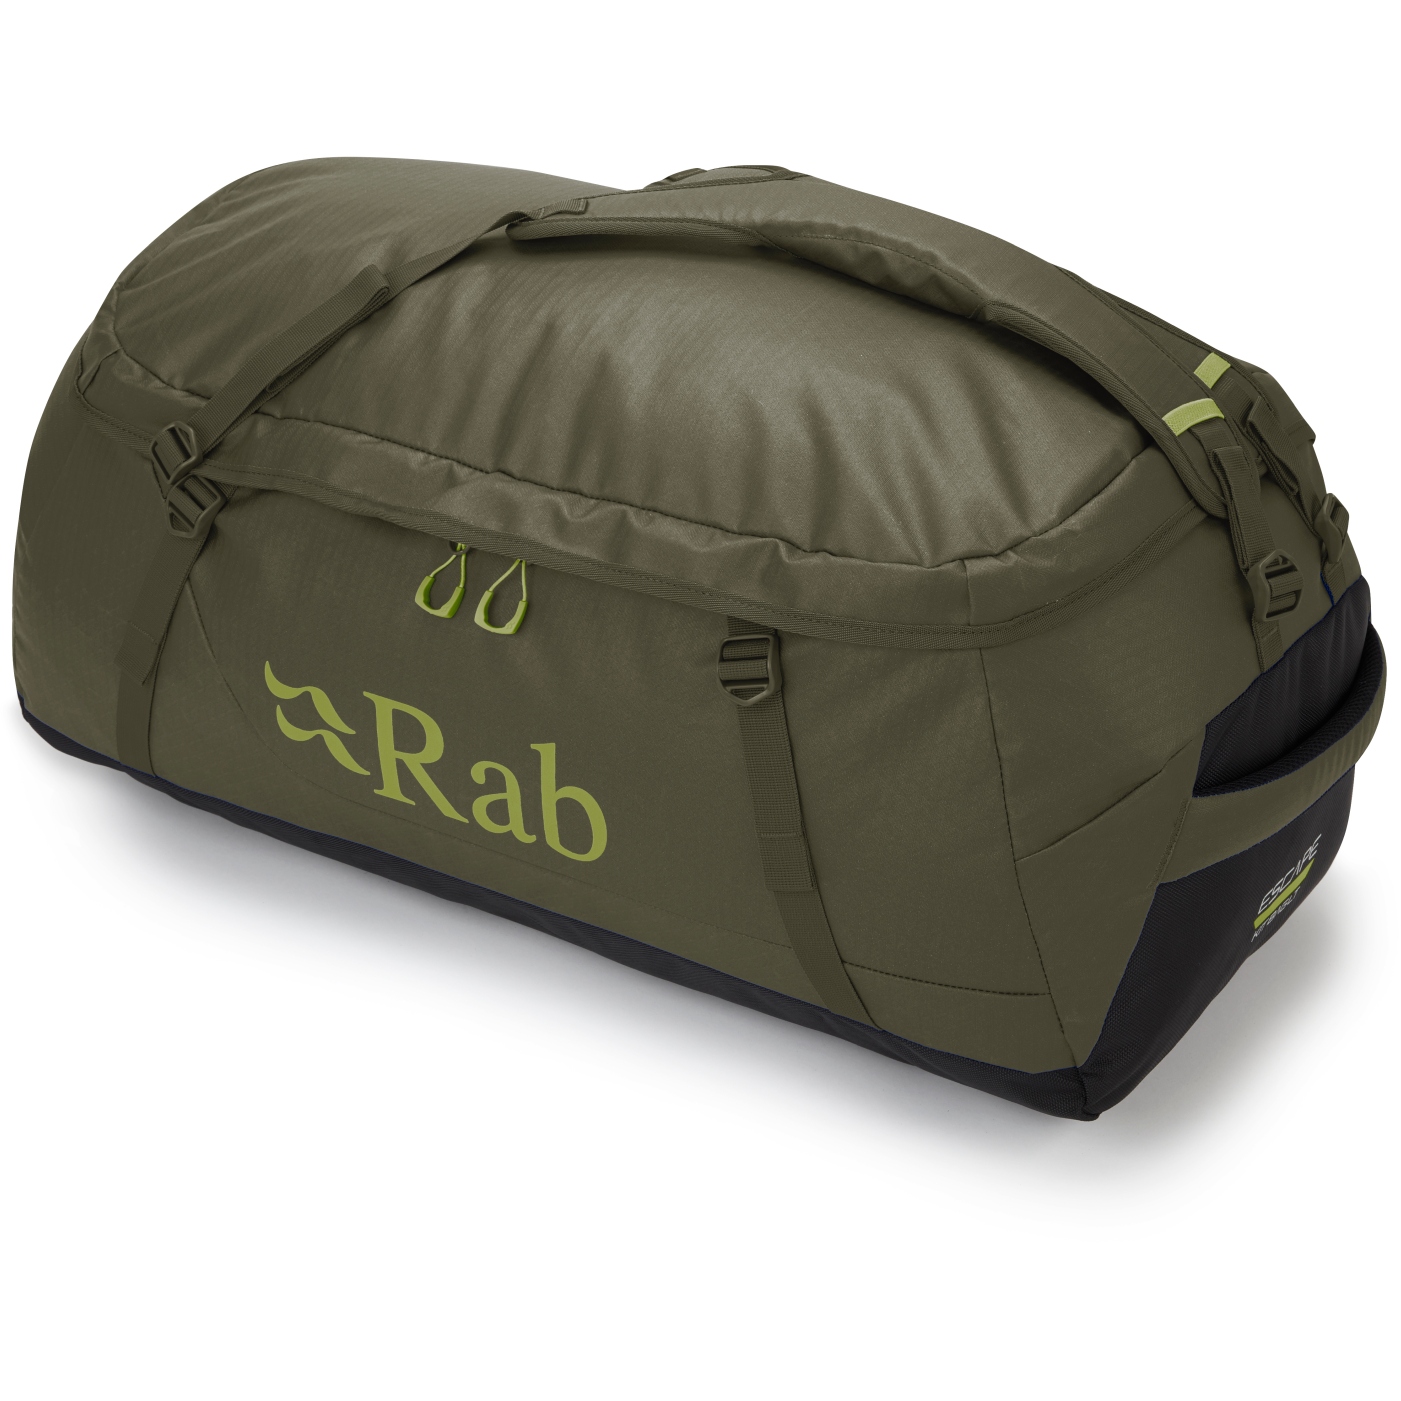 Bild von Rab Escape Kit Bag LT 70L Reisetasche - army